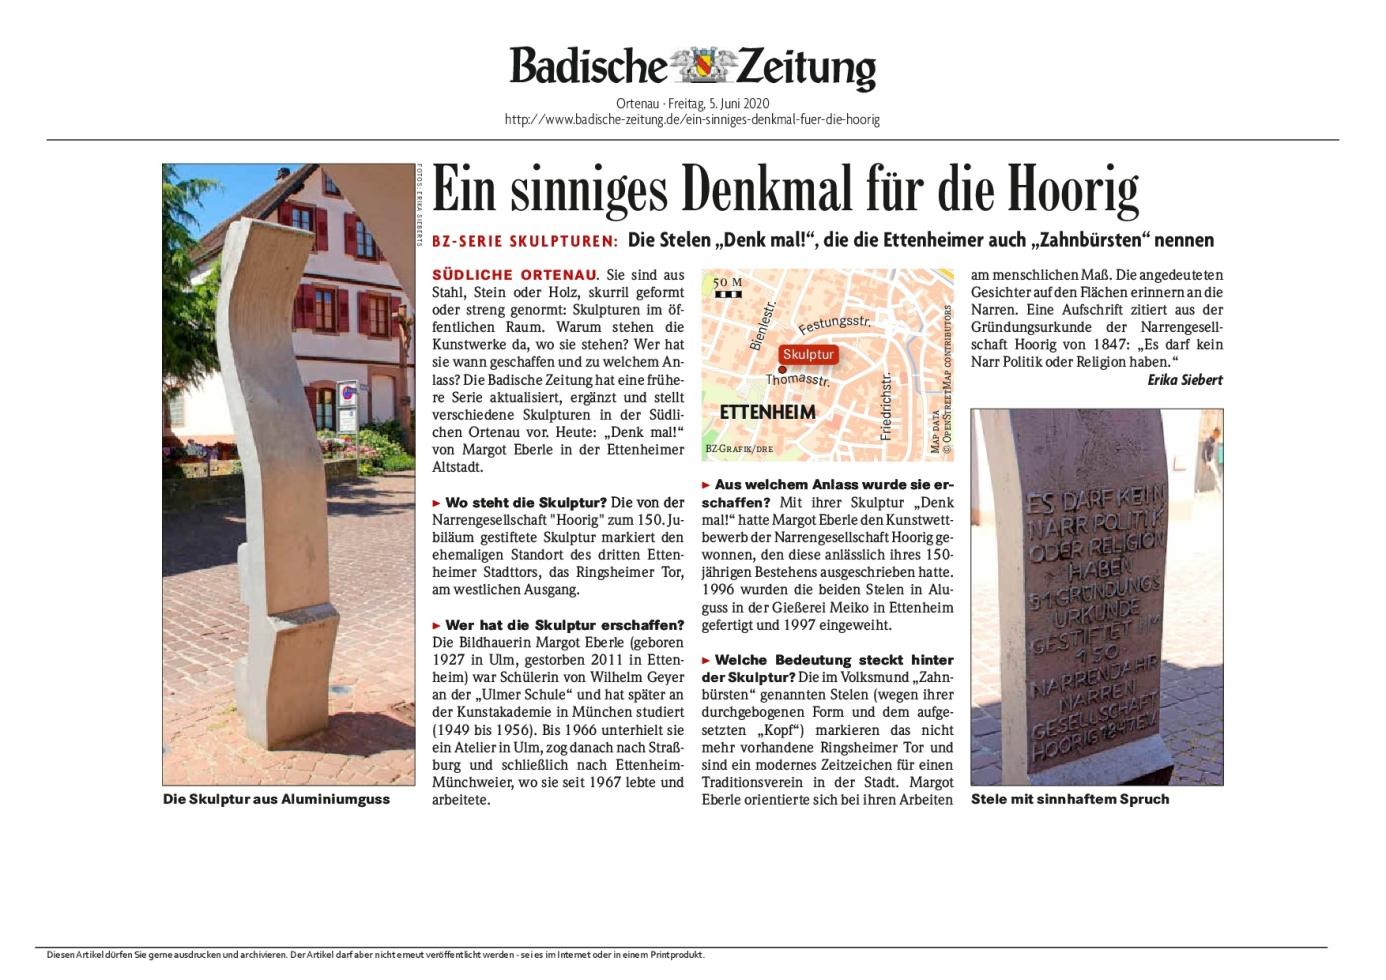 Bericht aus der Badischen Zeitung zur Skulptur